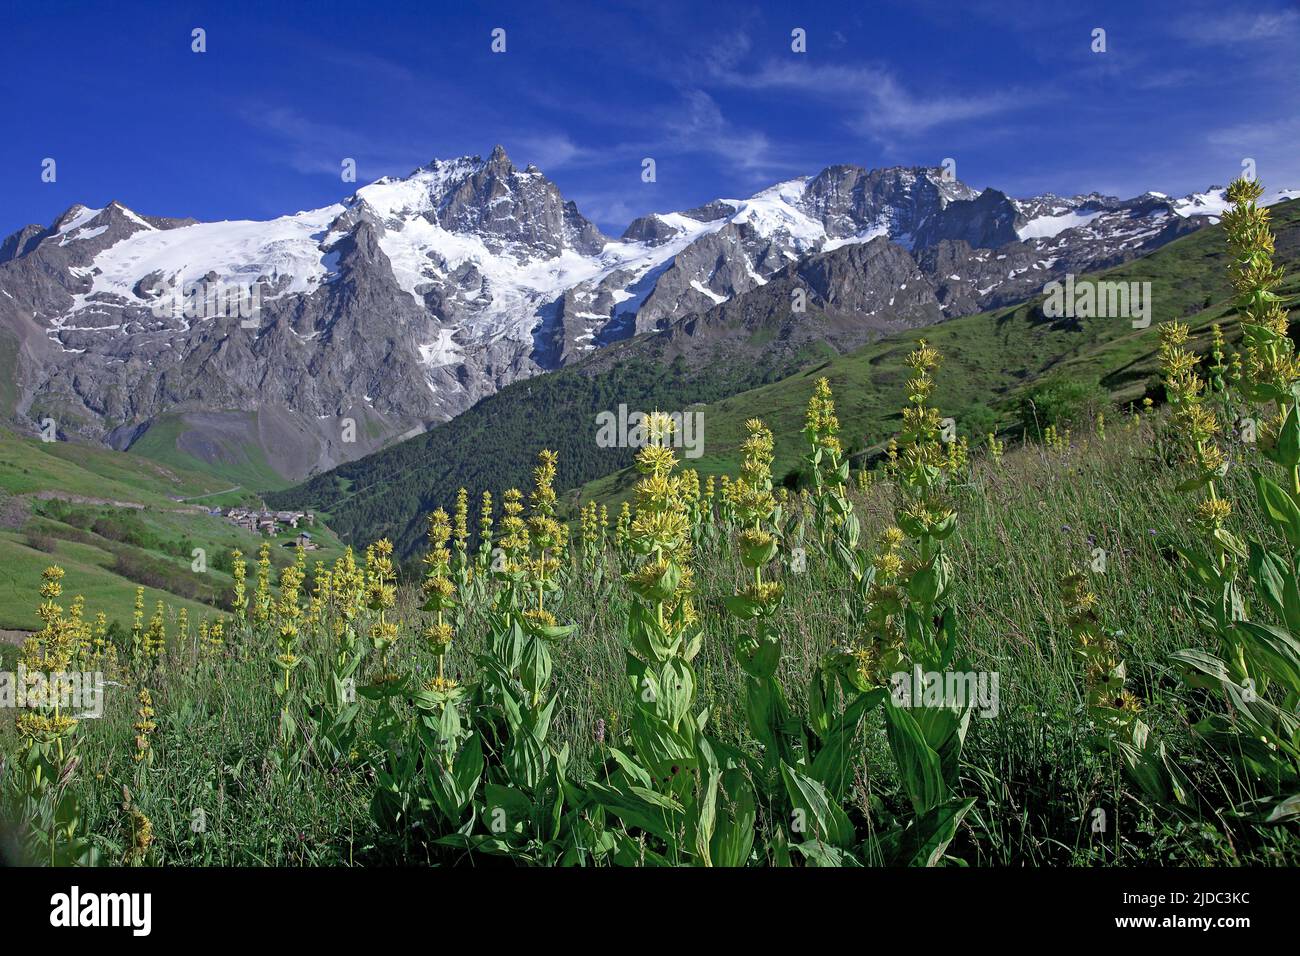 France, Hautes-Alpes La Grave, Meije massif, Ecrins National Park Stock Photo